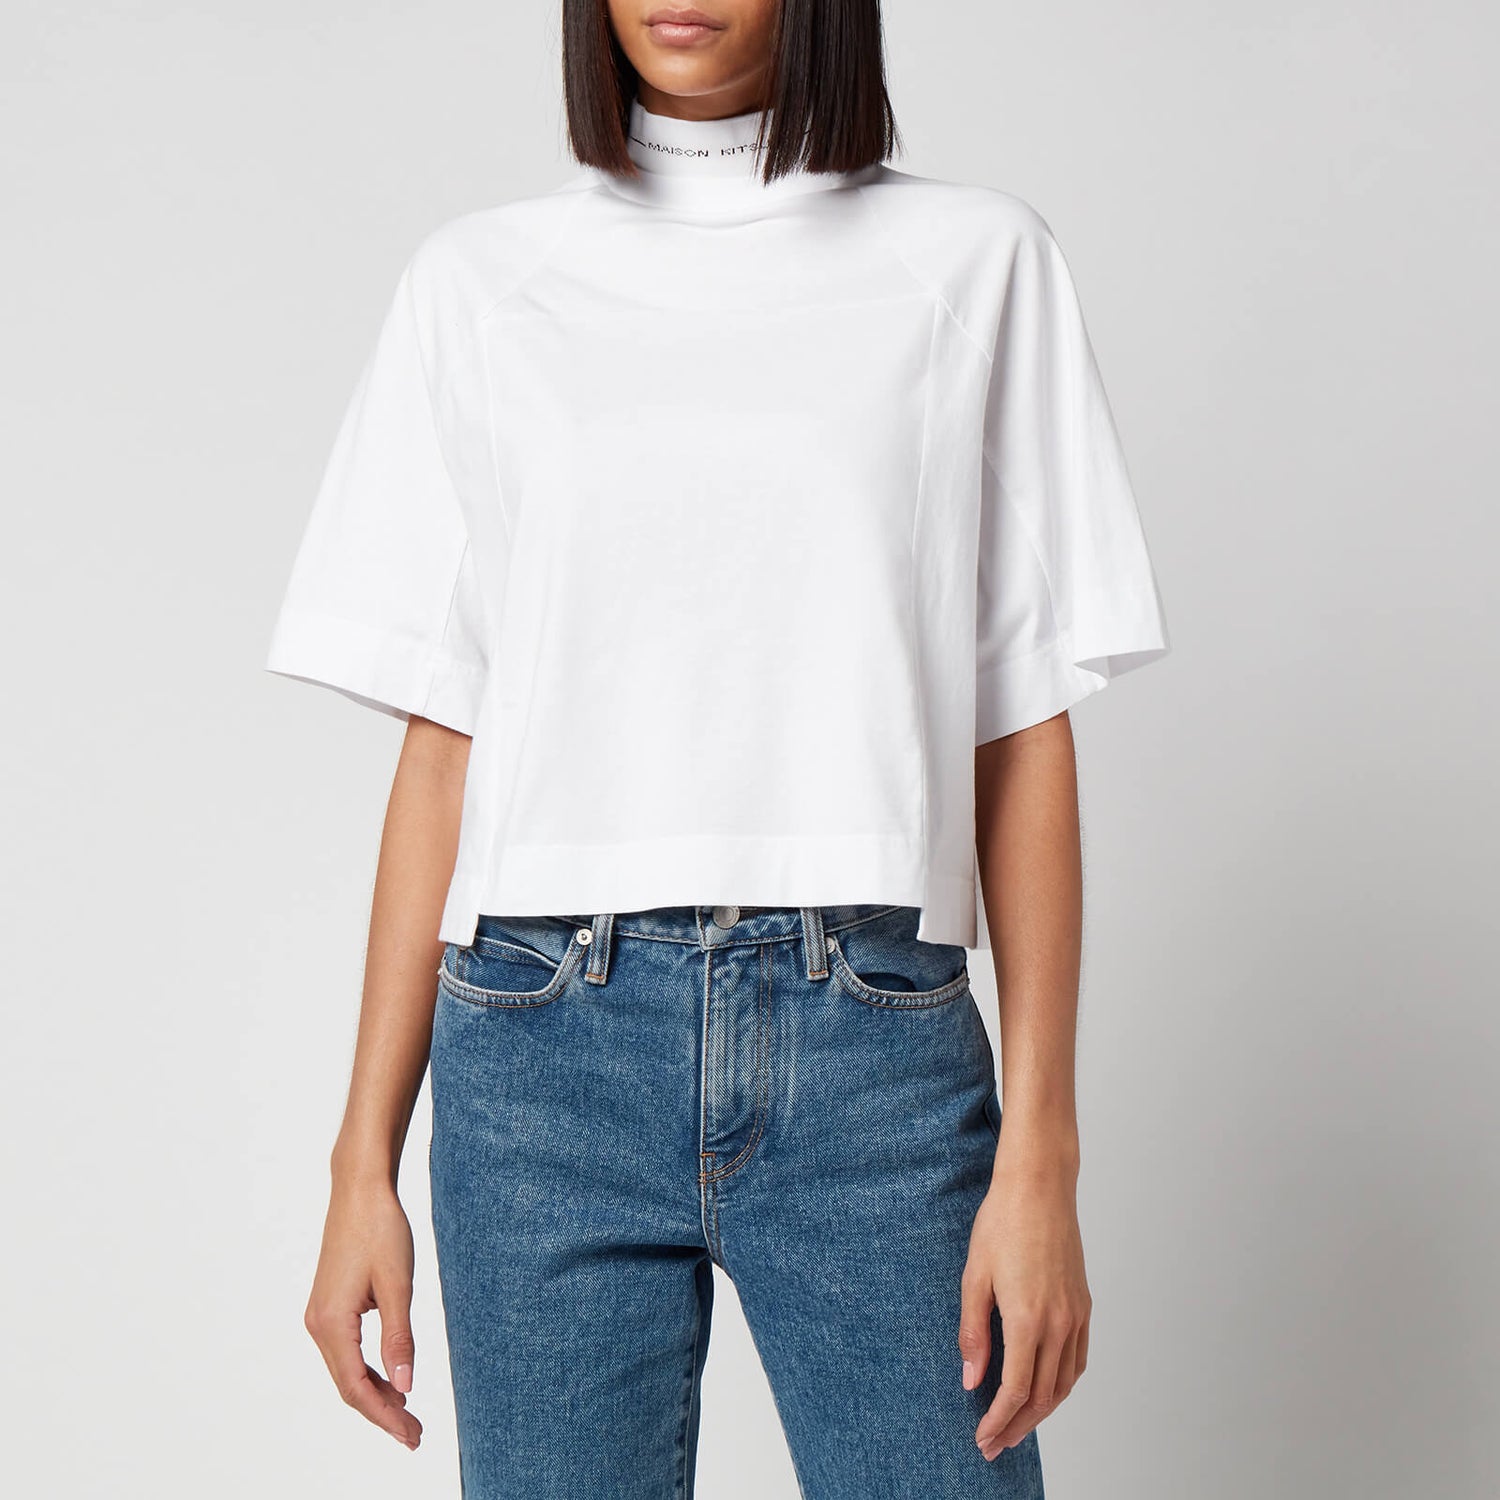 Maison Kitsuné Women's Cropped T-Shirt - White - L